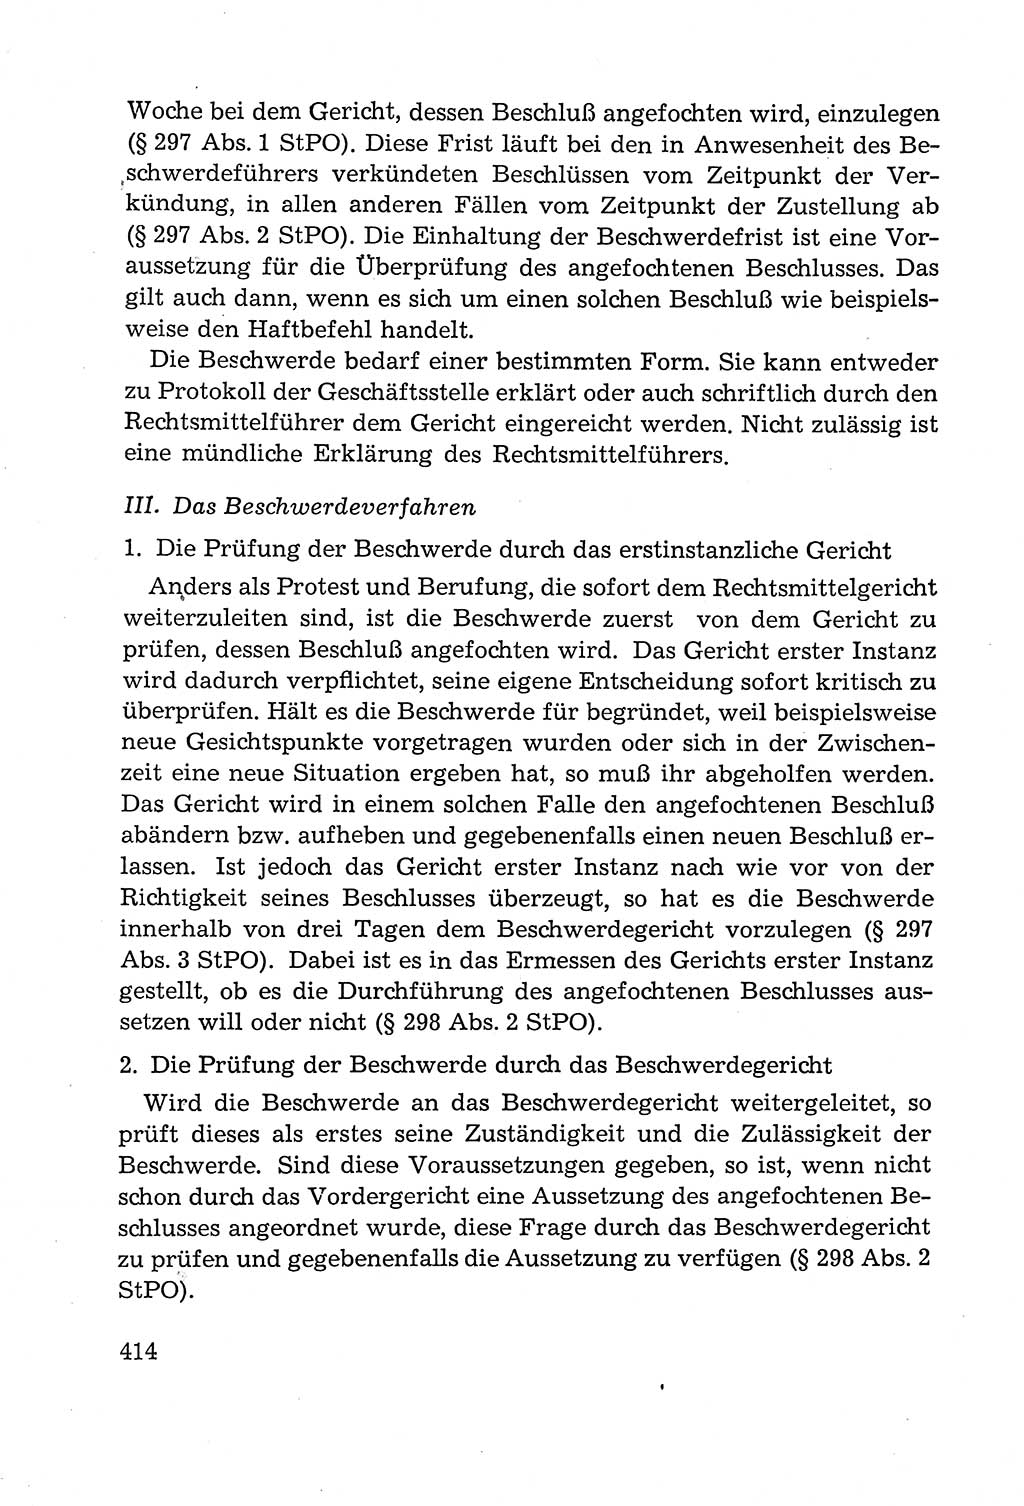 Leitfaden des Strafprozeßrechts der Deutschen Demokratischen Republik (DDR) 1959, Seite 414 (LF StPR DDR 1959, S. 414)